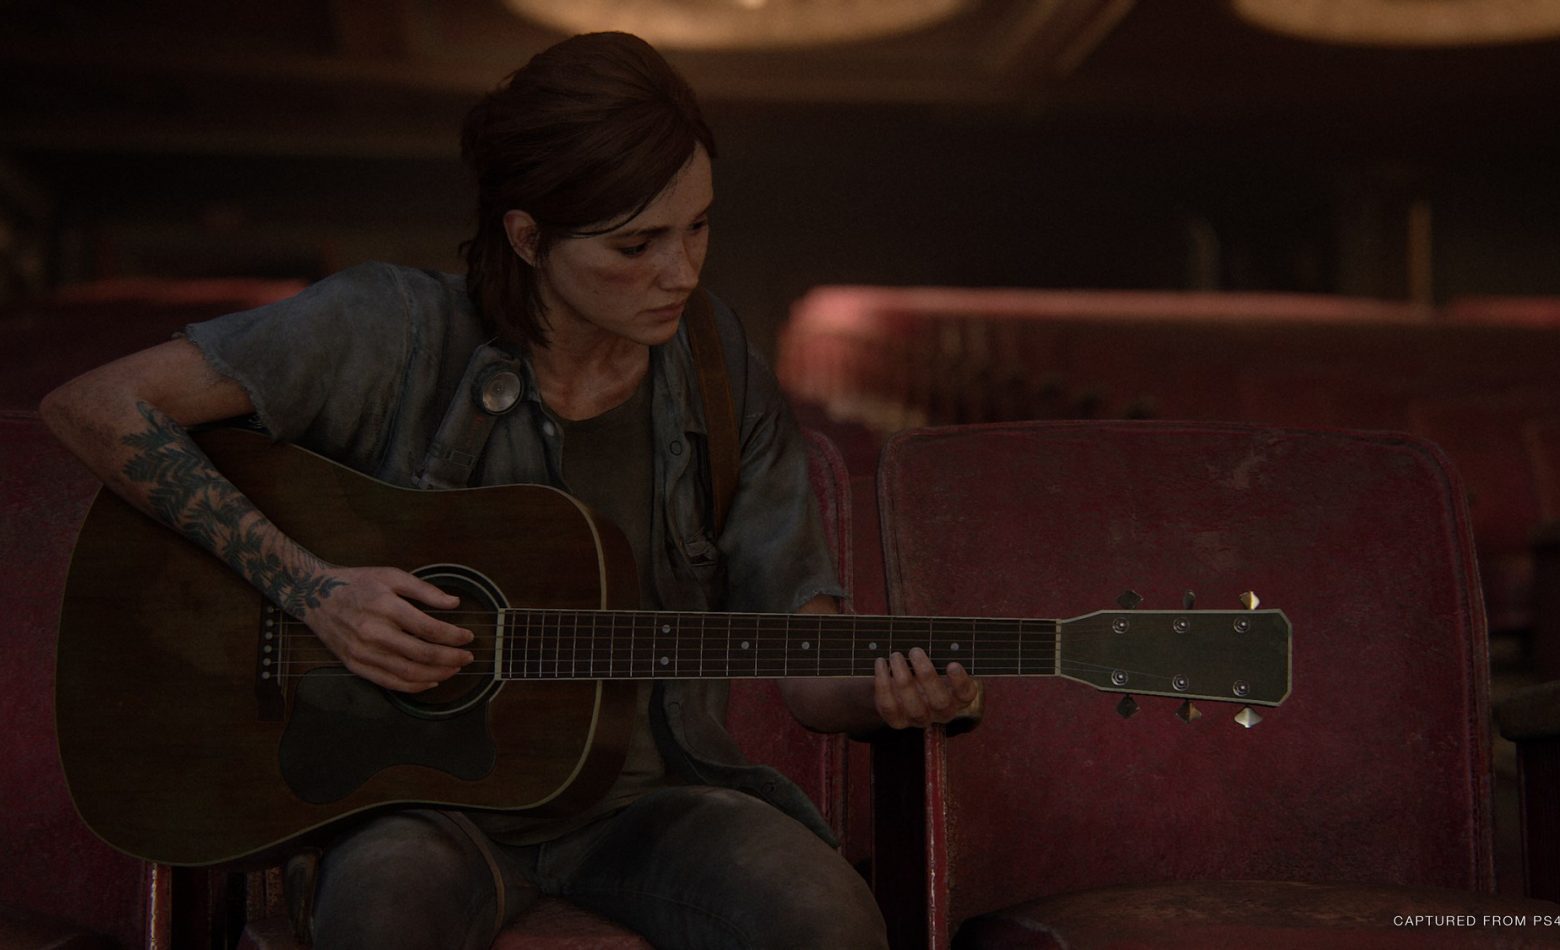 Ellie segue sozinha em mais uma parte de The Last of Us Part II [Gameplay]